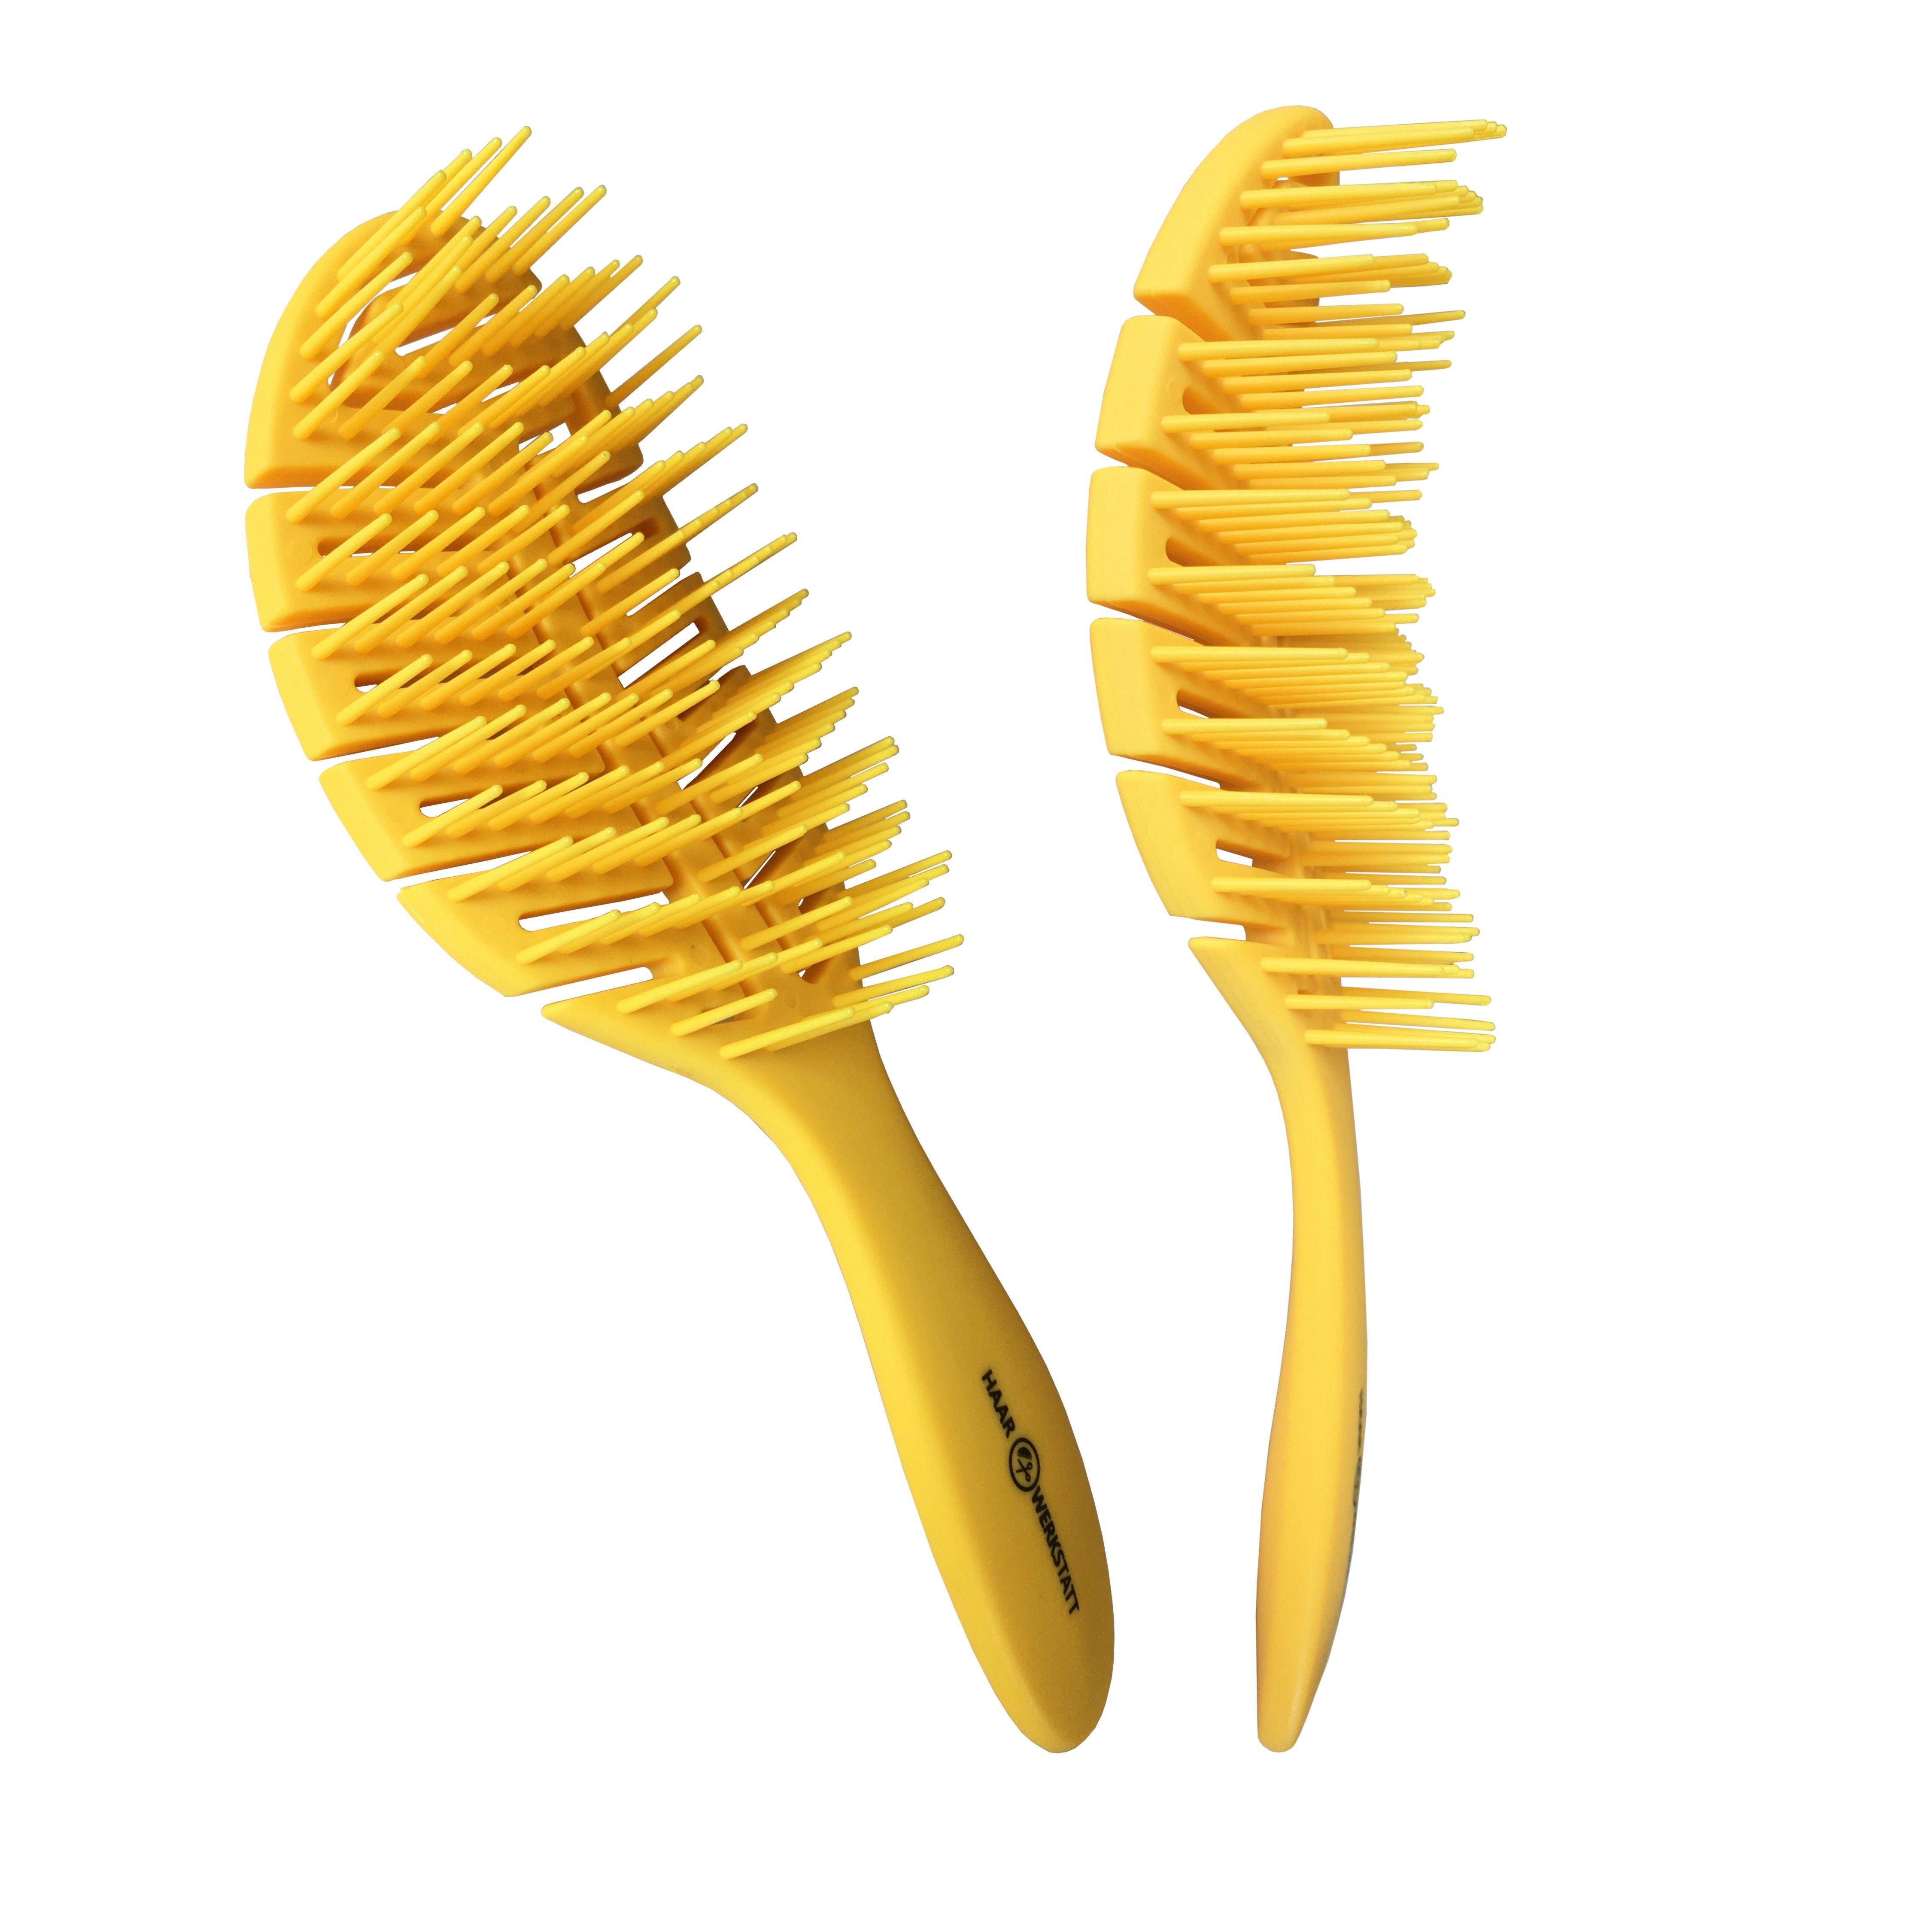 Haarwerkstatt Haarbürste Profi Haarbürste für Damen, Herren und Kinder - Die optimale Entwirrungsbürste für Ihr Haar, Gebogene Haarbürste mit weiche Borsten - curved brush Gelb